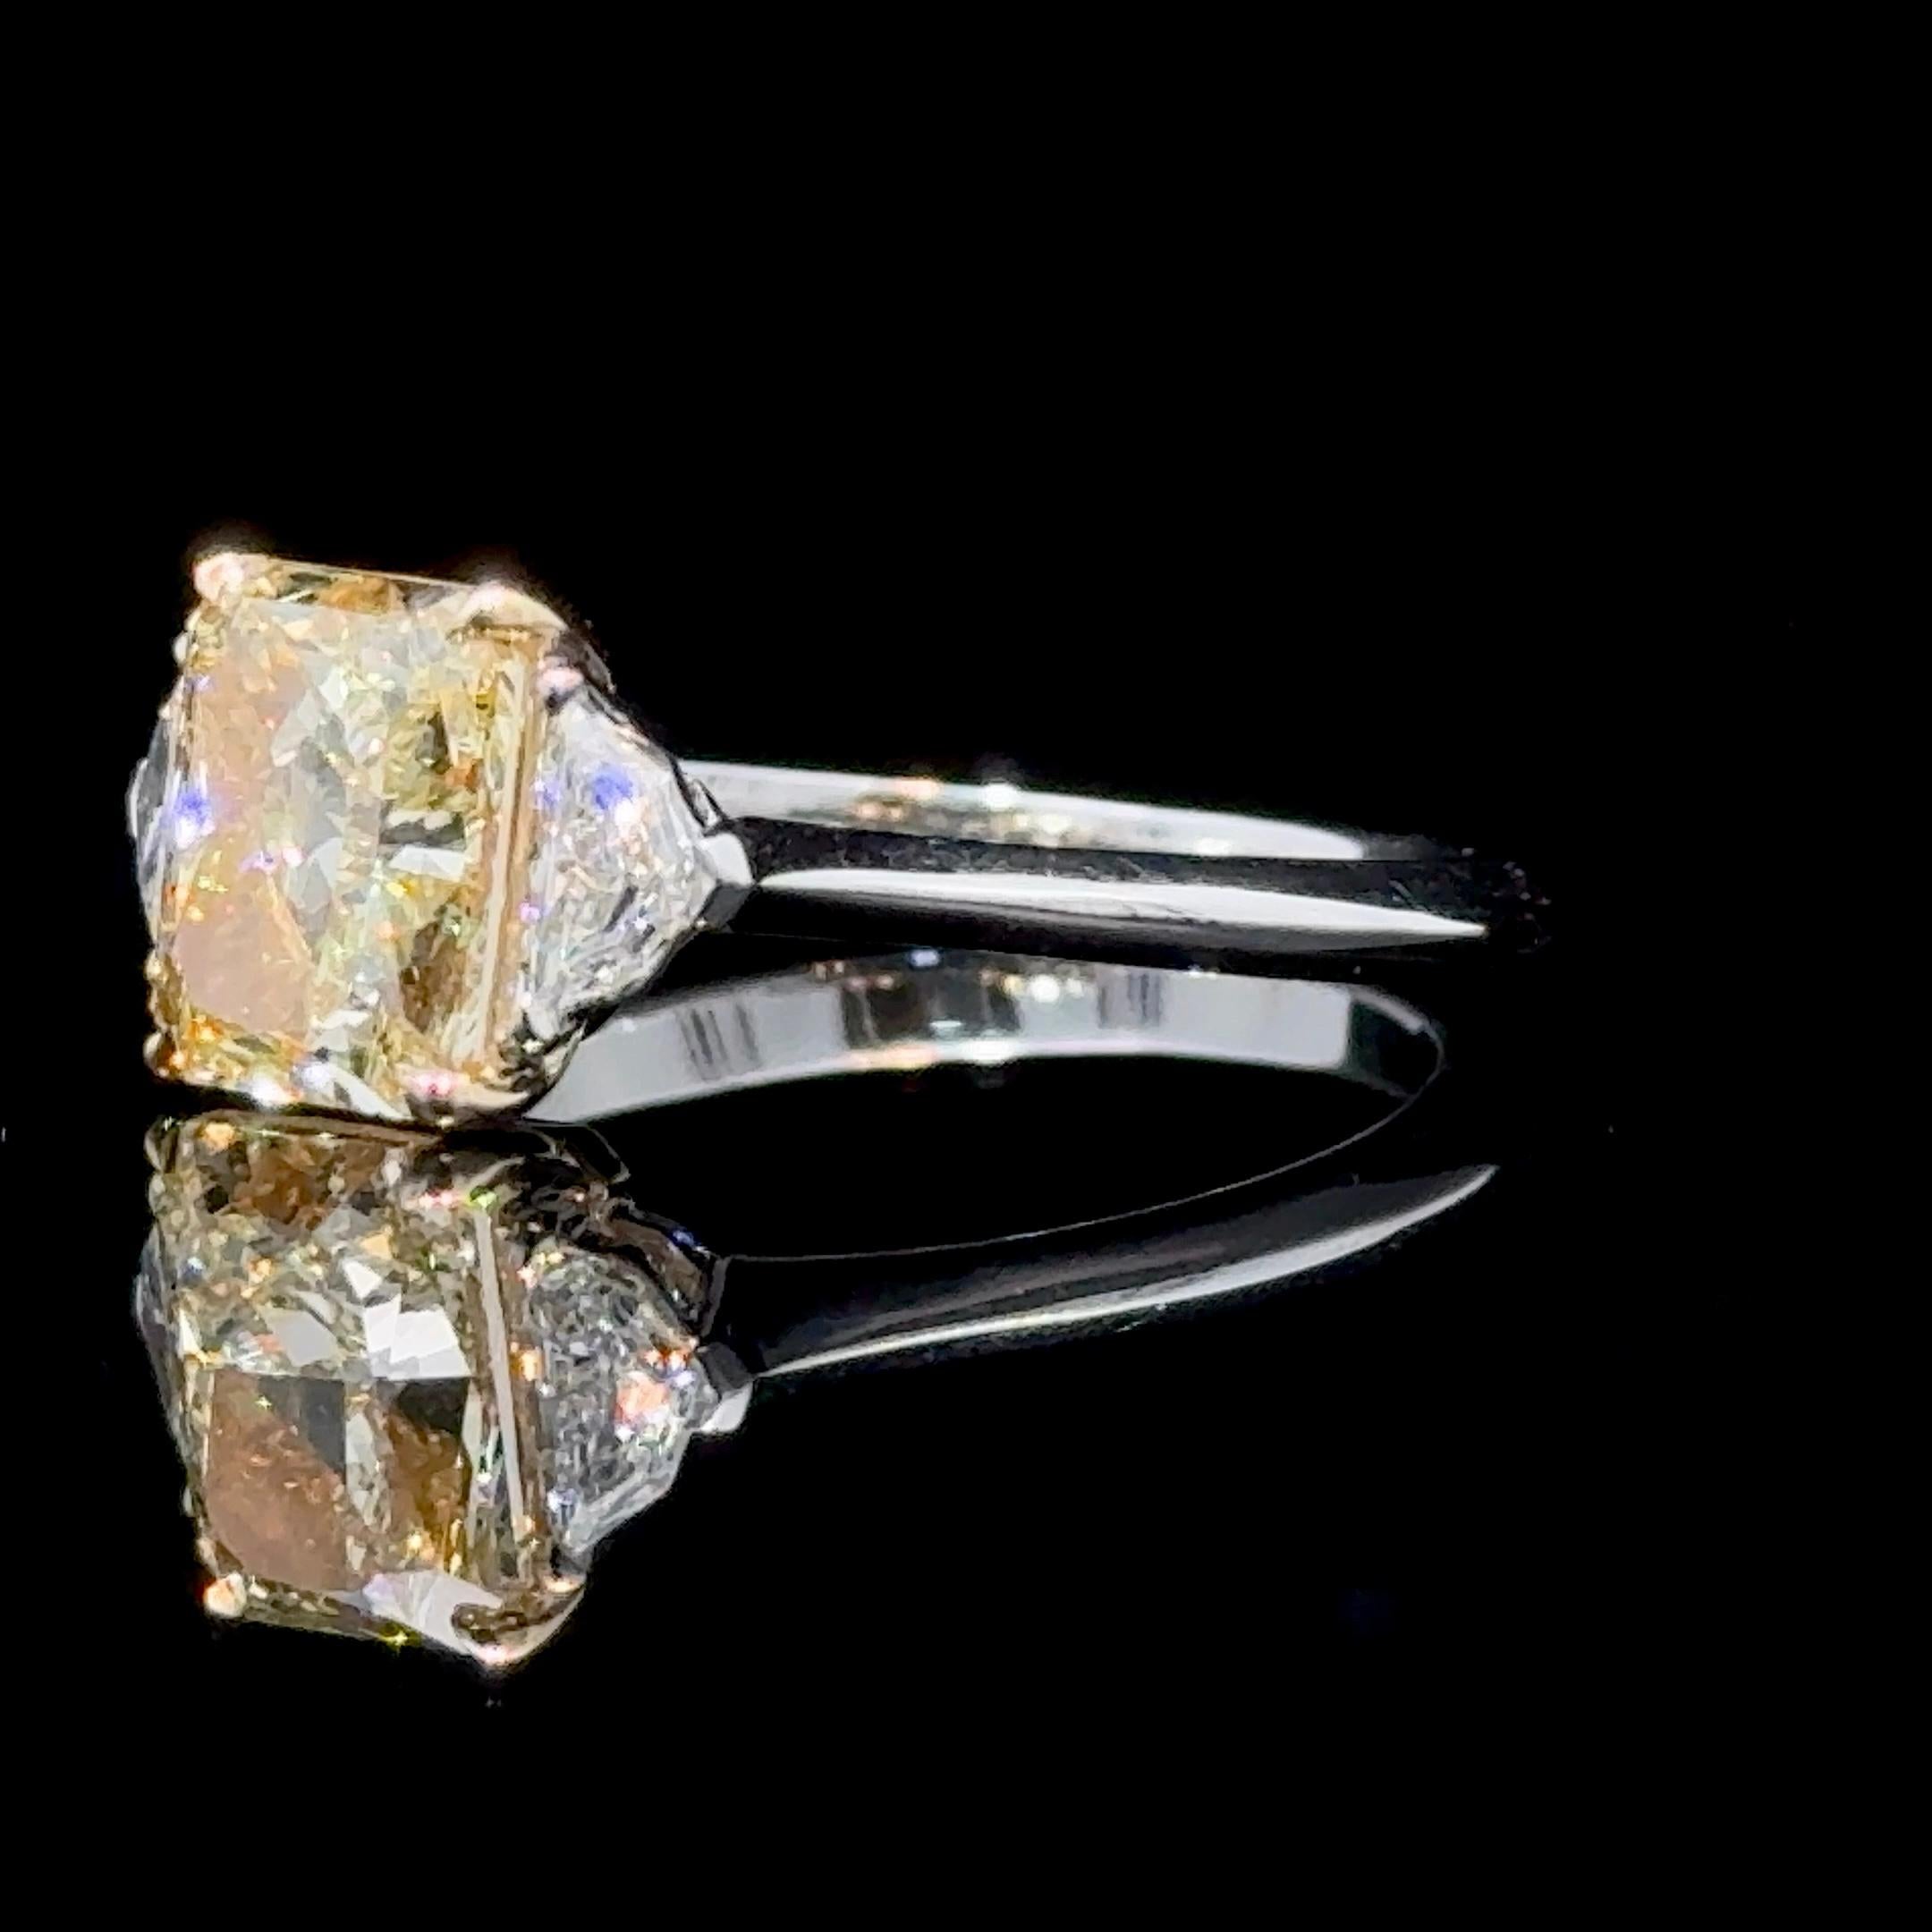 Handgefertigter Ring mit einem 2,16 GIA-zertifizierten natürlichen Diamanten im Fancy-Radiant-Schliff.
Die Reinheit wird als VS1 eingestuft. Ausgezeichneter Poliergrad und ausgezeichnete Symmetrie. Keine Fluoreszenz
GIA#: 2464753503
Eingefasst